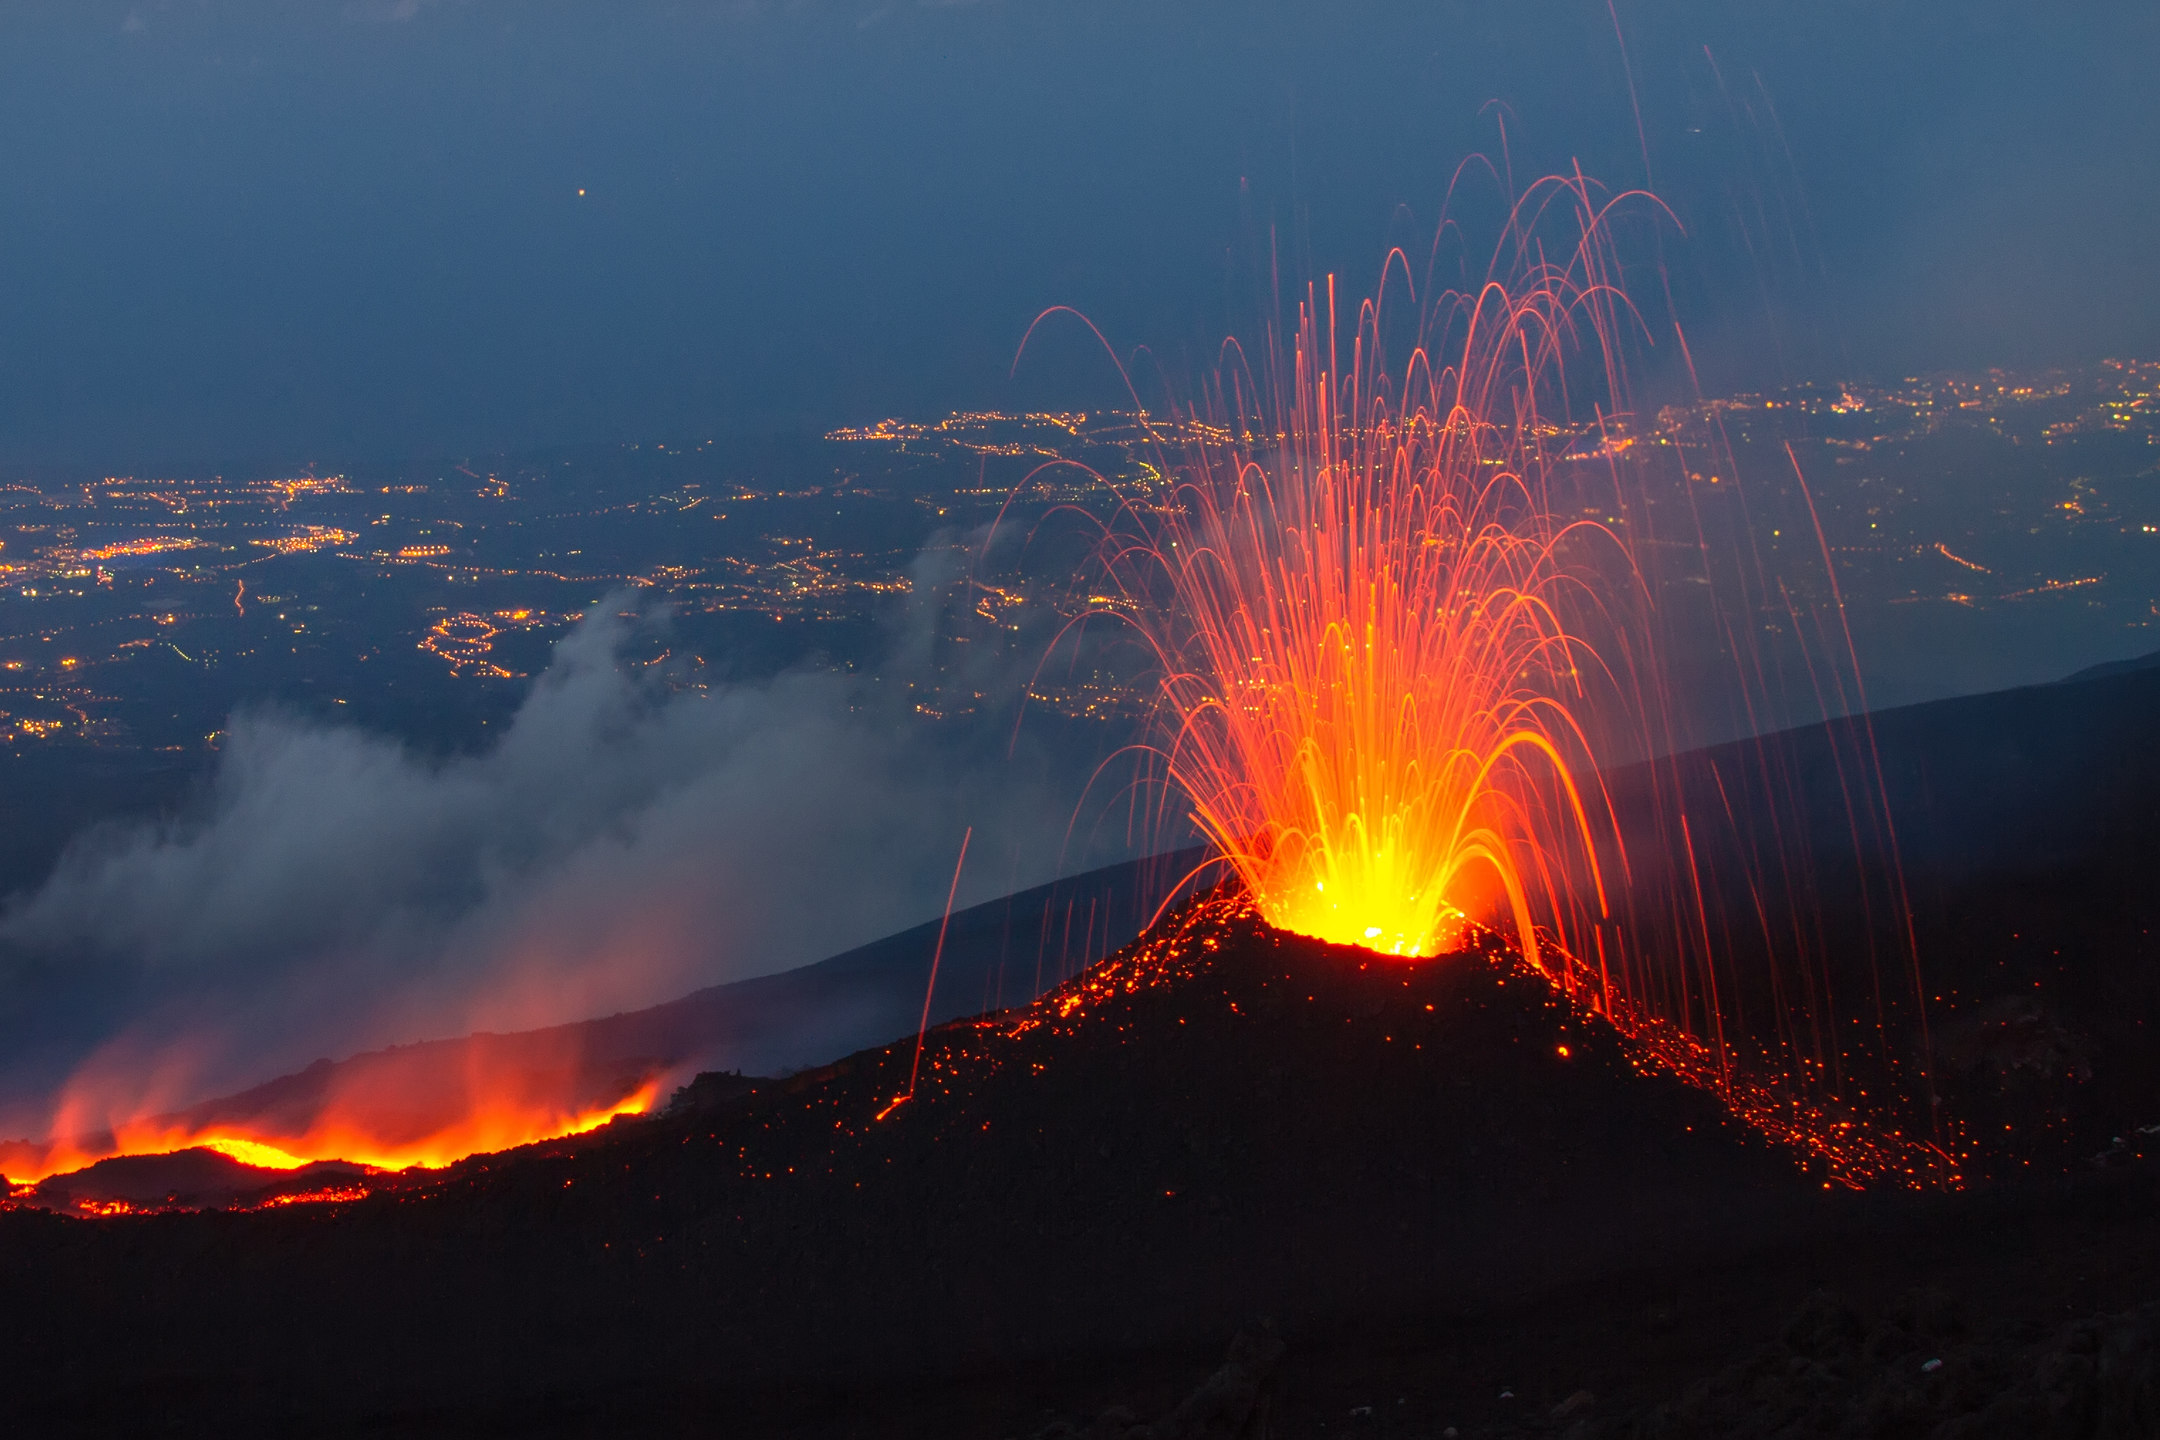 Лава вулкана Этна